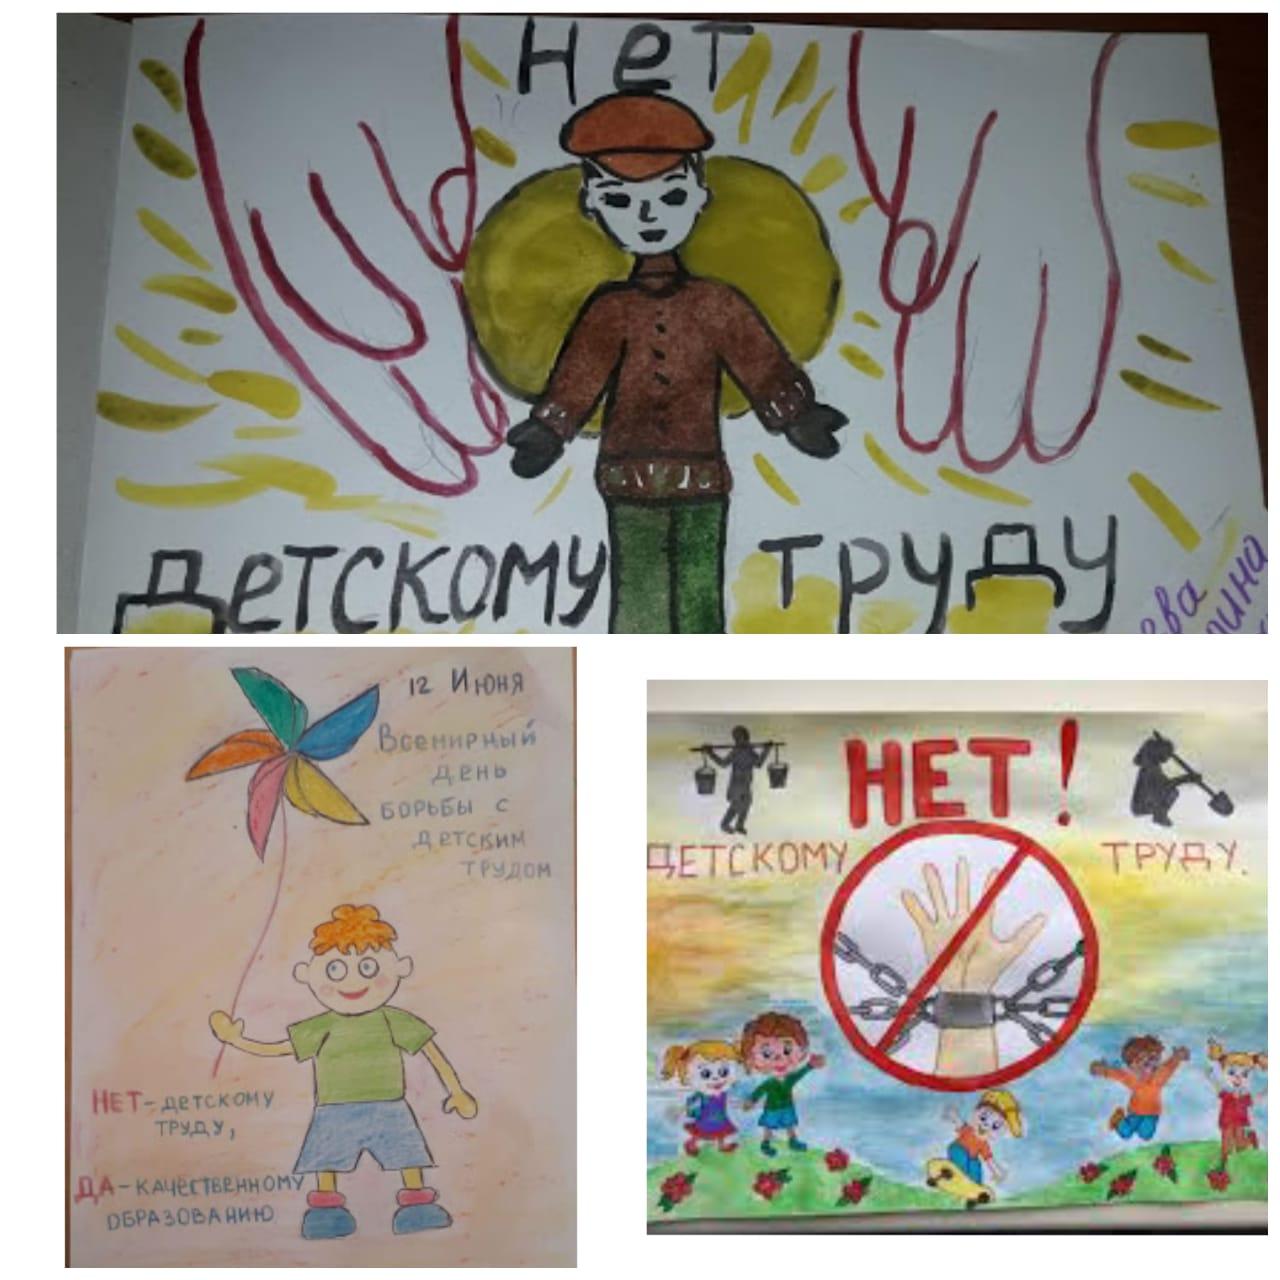 Конкурс рисунков среди учащихся гимназии на тему: "12 дней борьбы против эксплуатации детского труда"